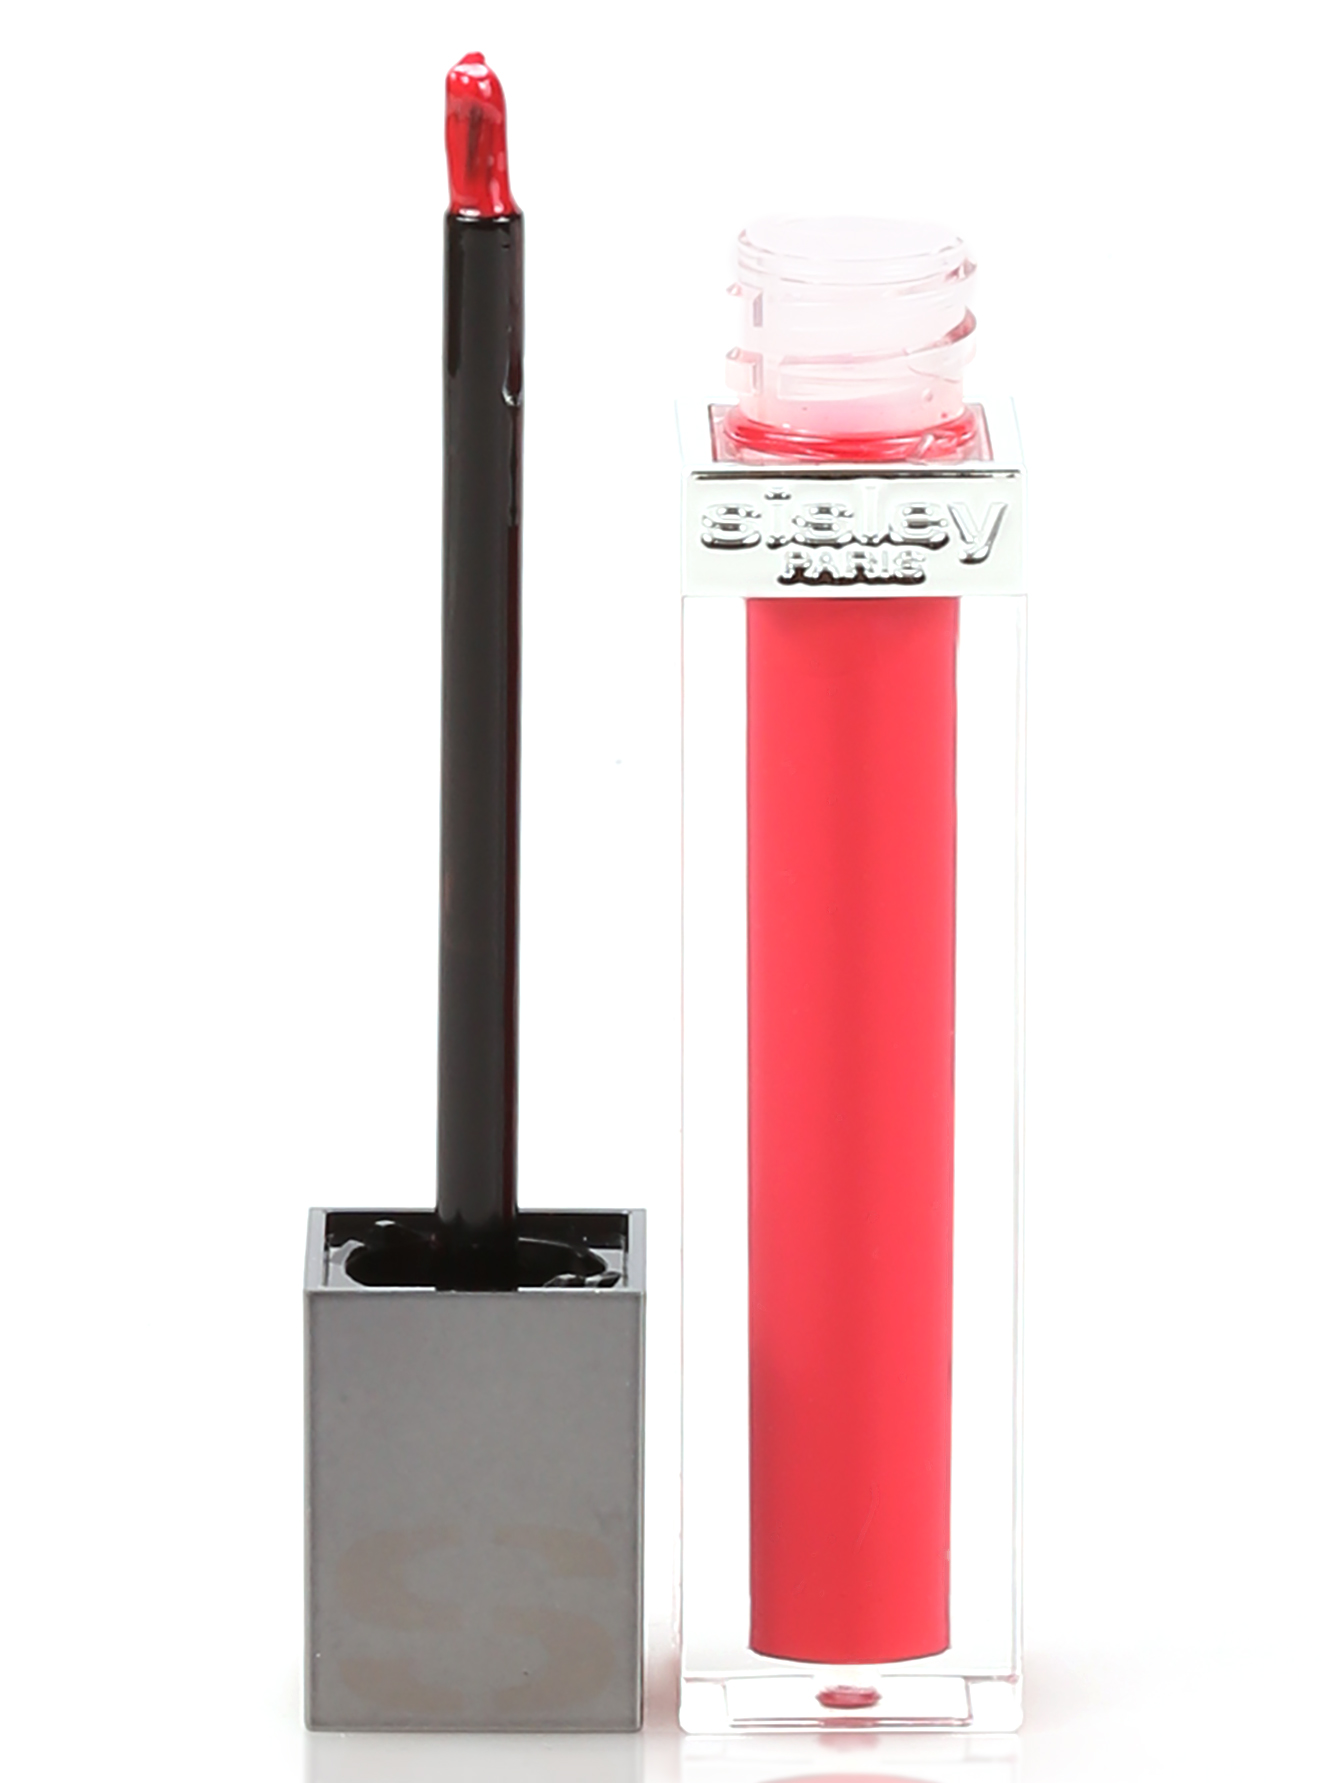 Фитоблеск для губ - №8 Pink, Phyto lip gloss - Модель Верх-Низ